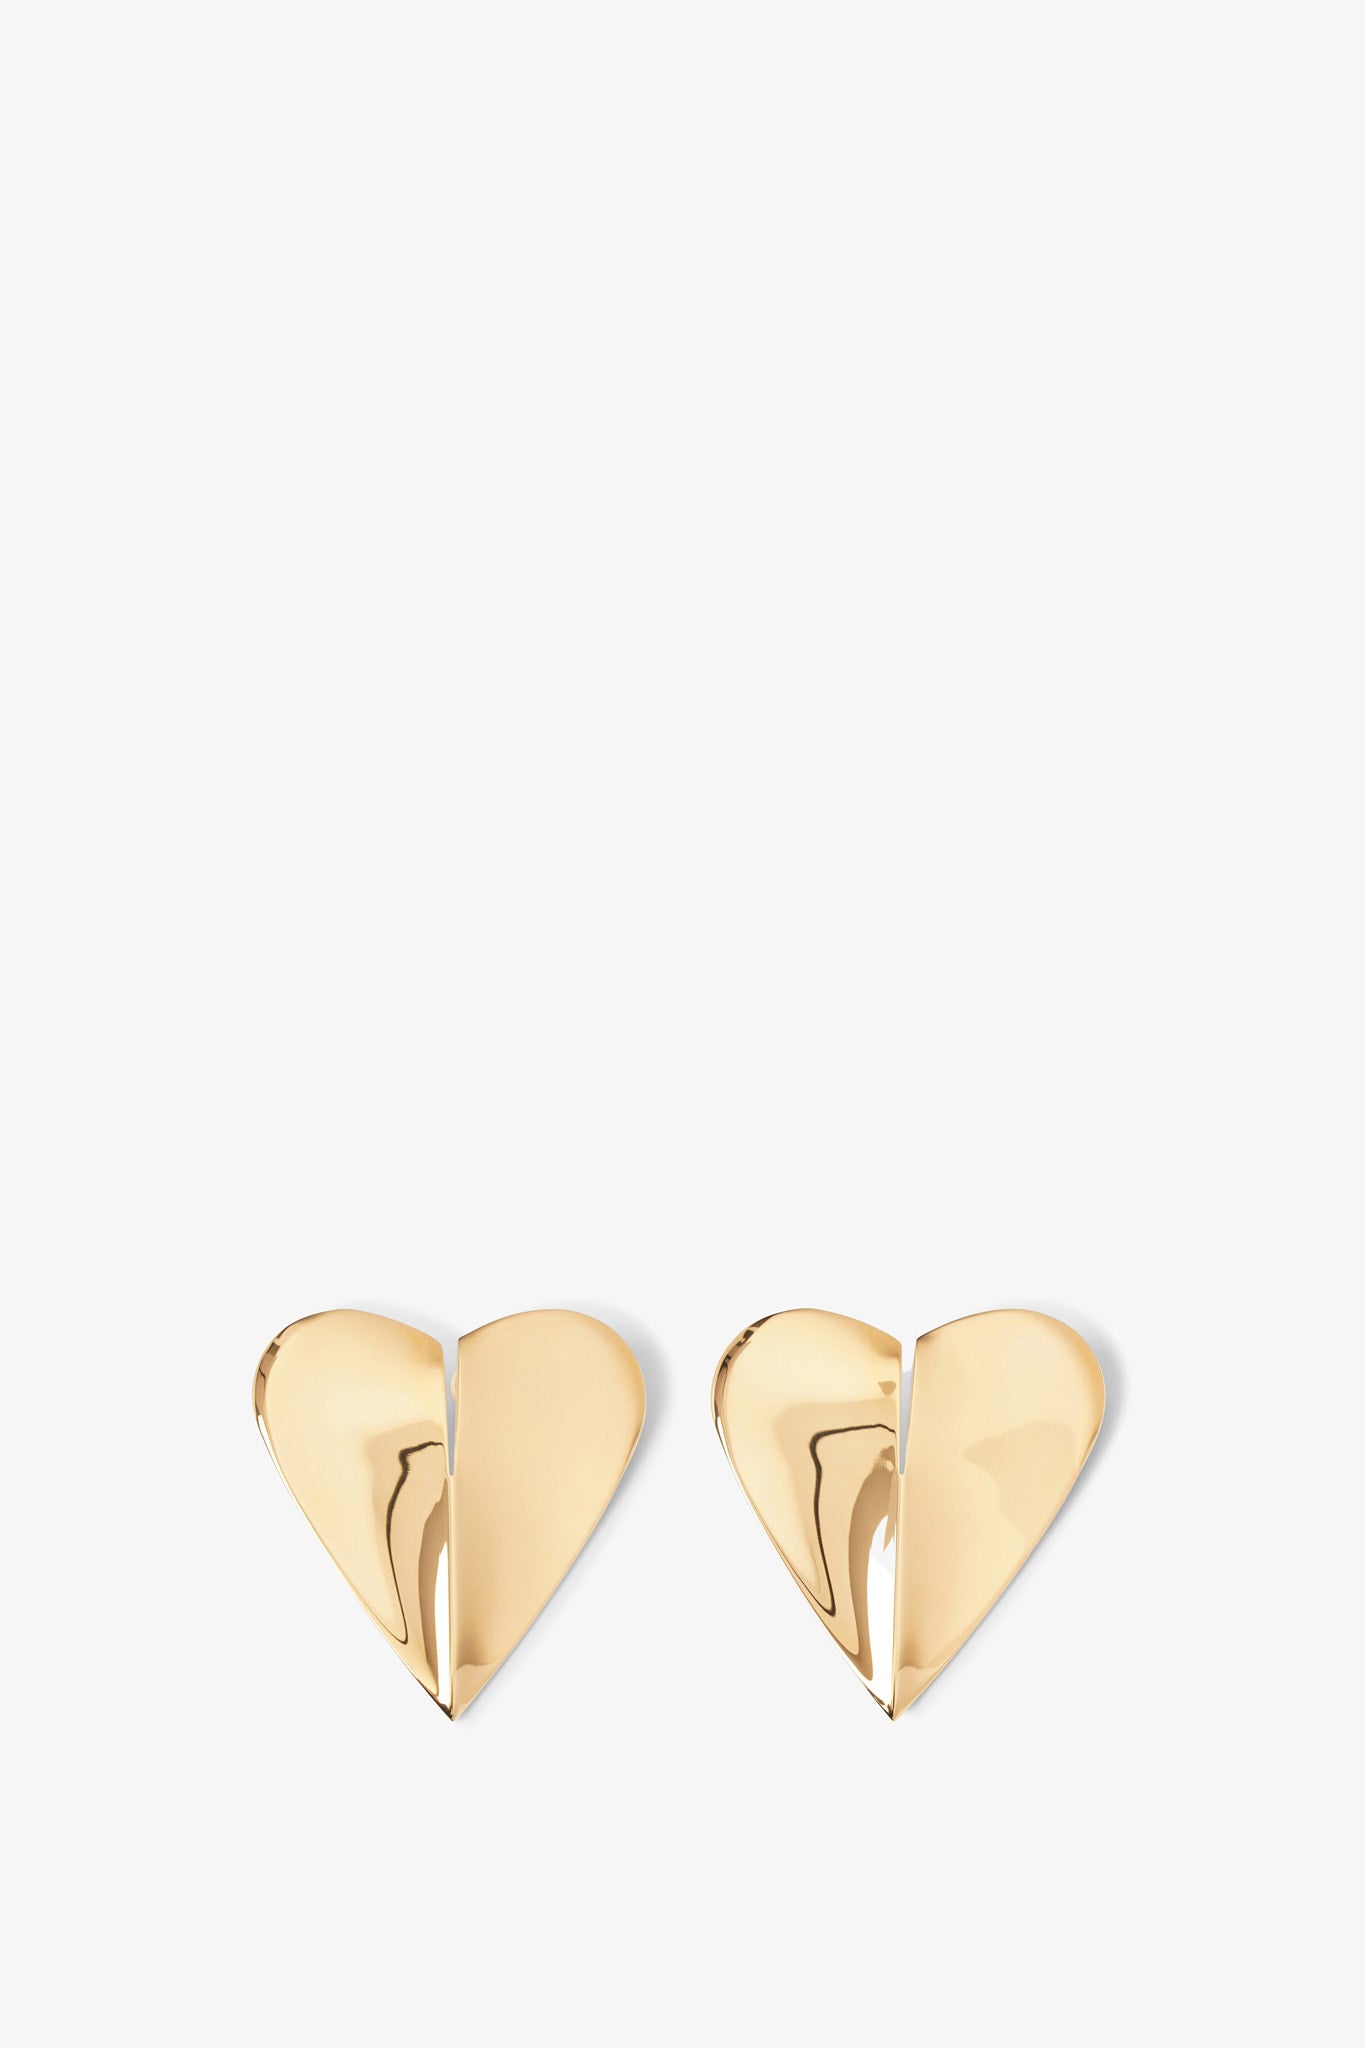 Le Cour L gold earrings